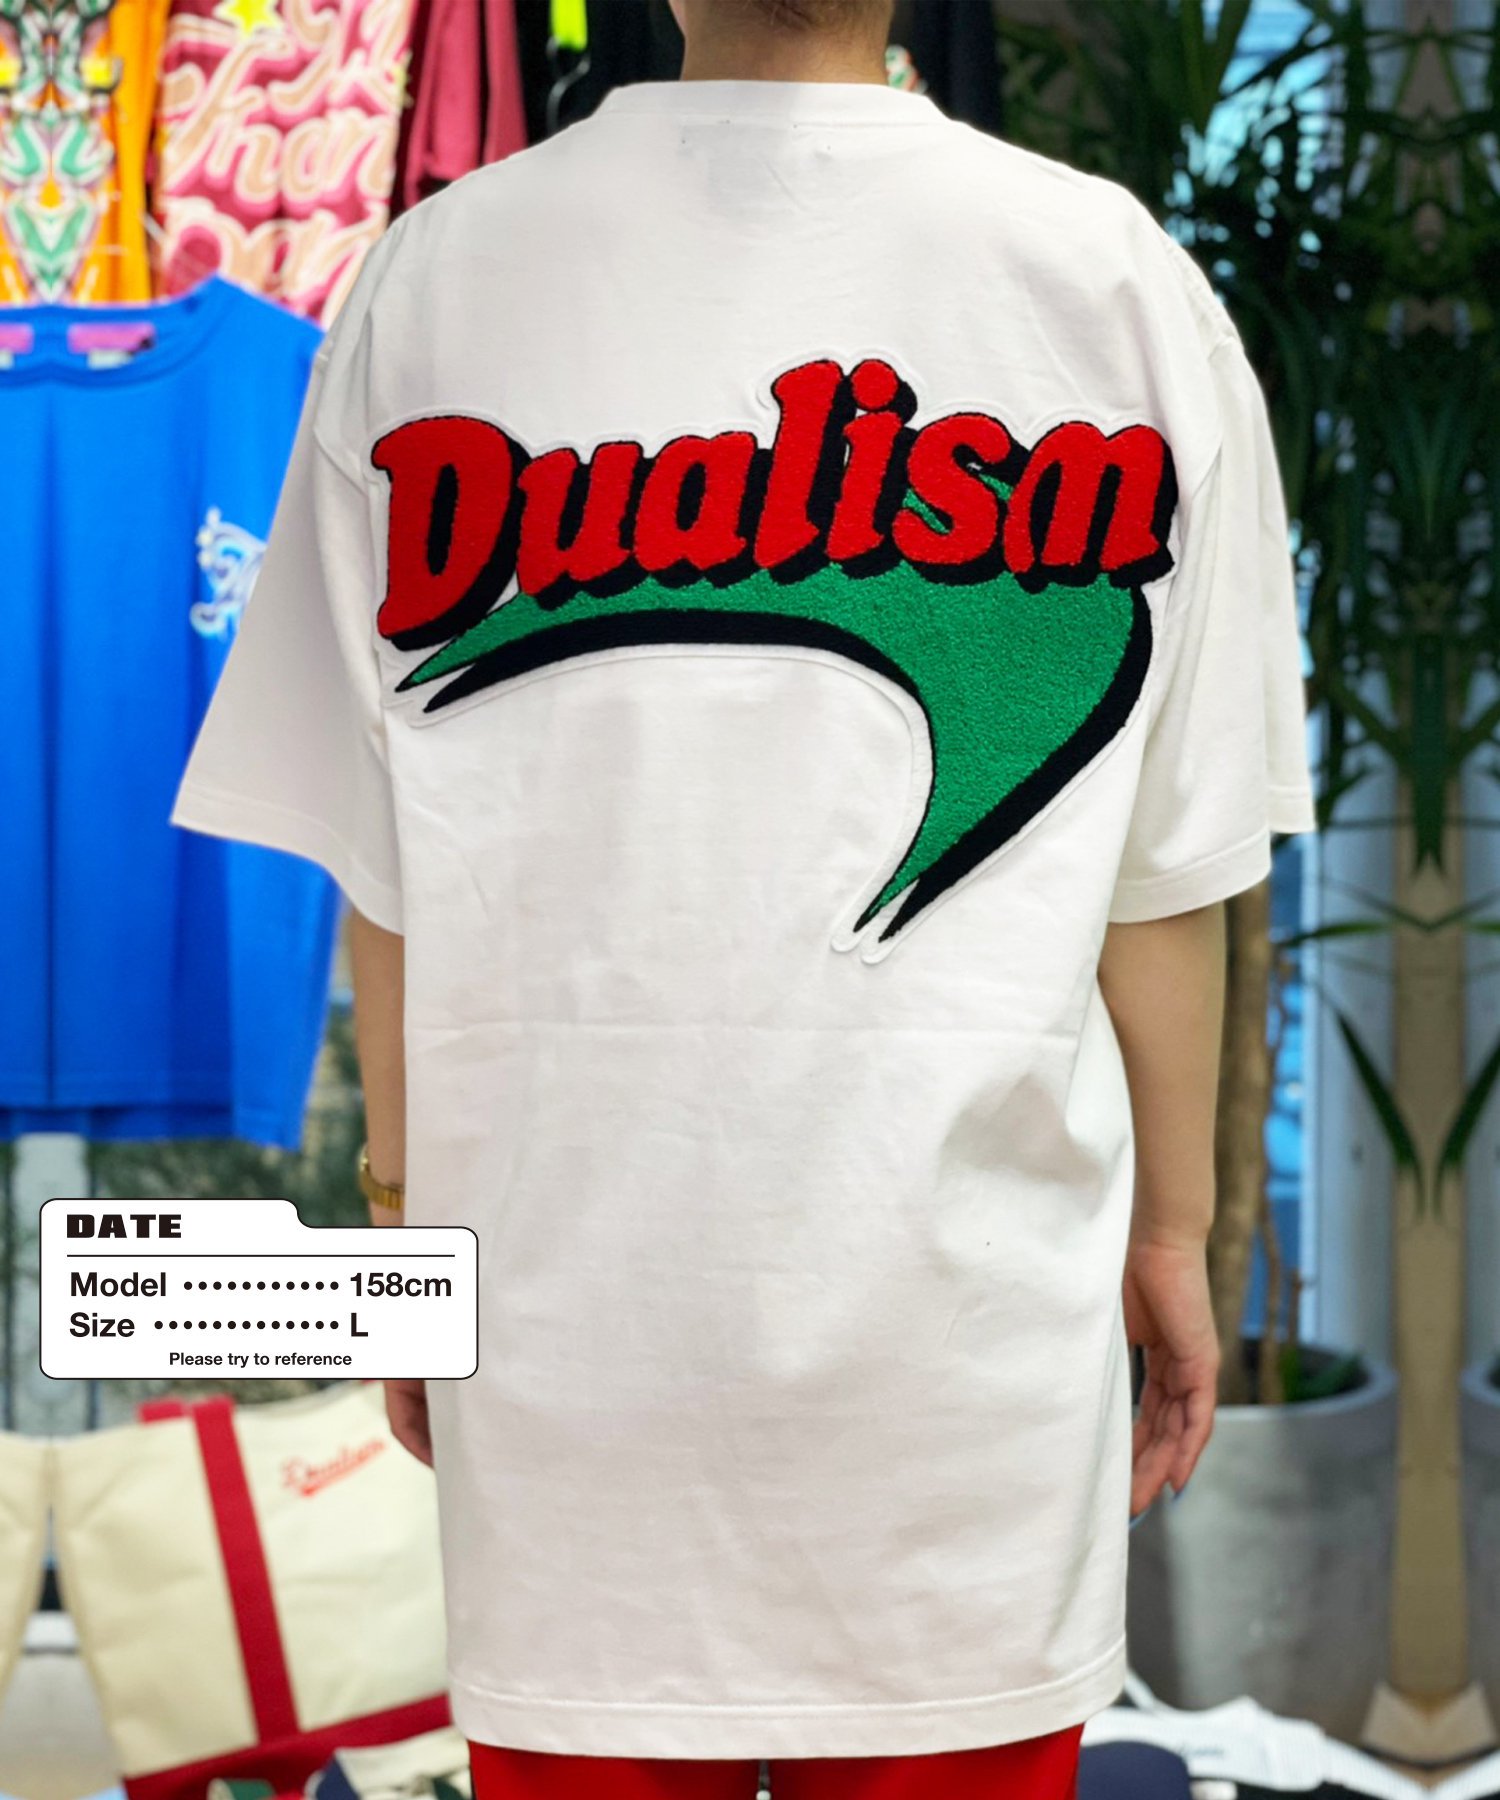 dualism ブーメランロゴ Tシャツ XLサイズ